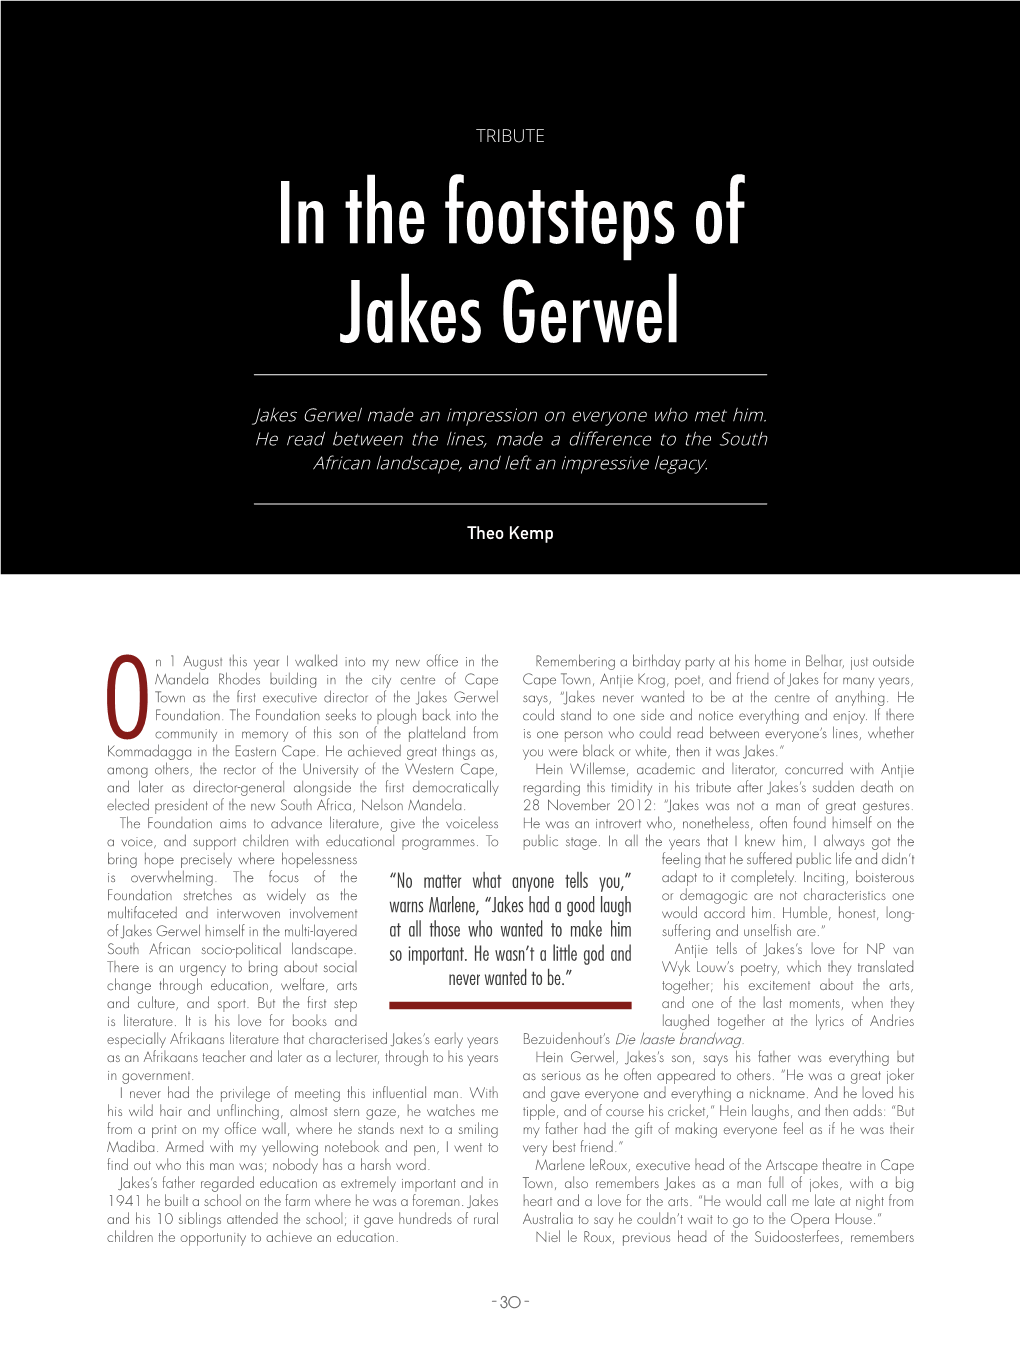 In the Footsteps of Jakes Gerwel